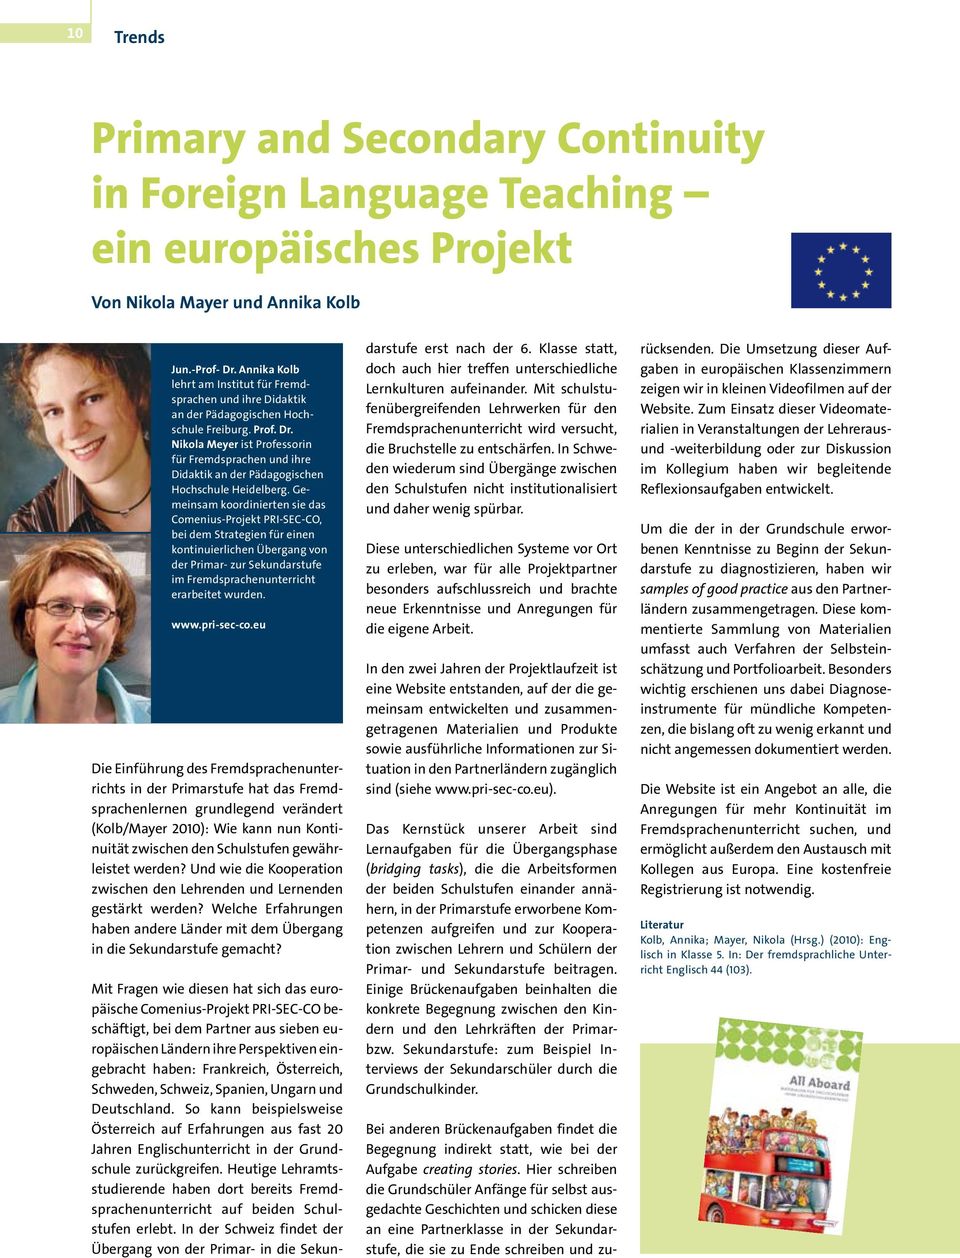 Nikola Meyer ist Professorin für Fremdsprachen und ihre Didaktik an der Pädagogischen Hochschule Heidelberg.